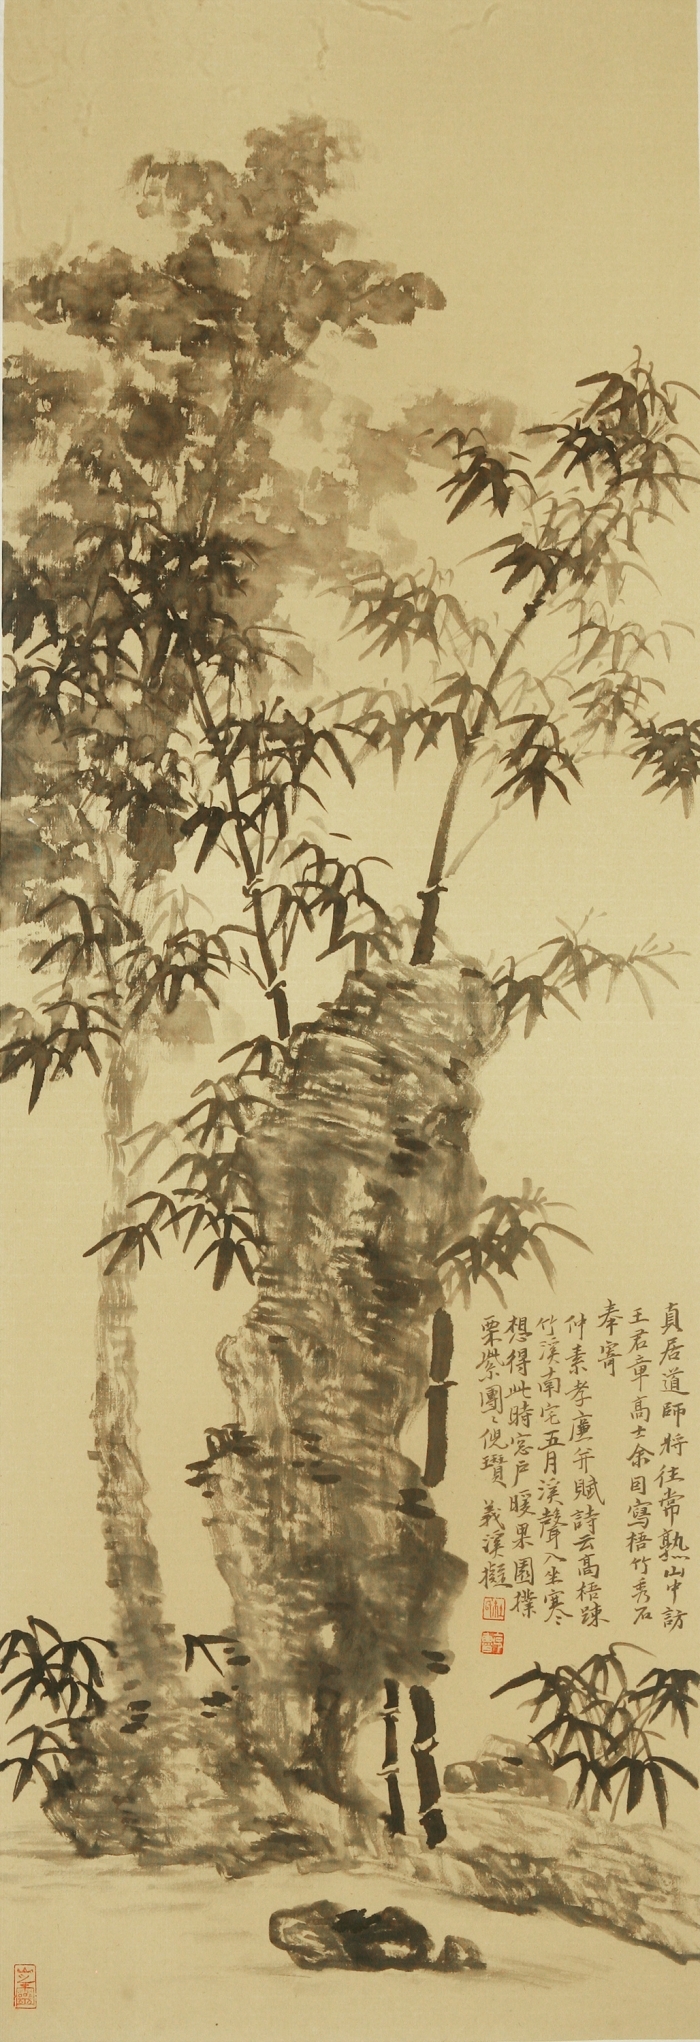 Galerie Fenghe Tang Chinesische Kunst - Der frühe Gebrauch für Heute 1